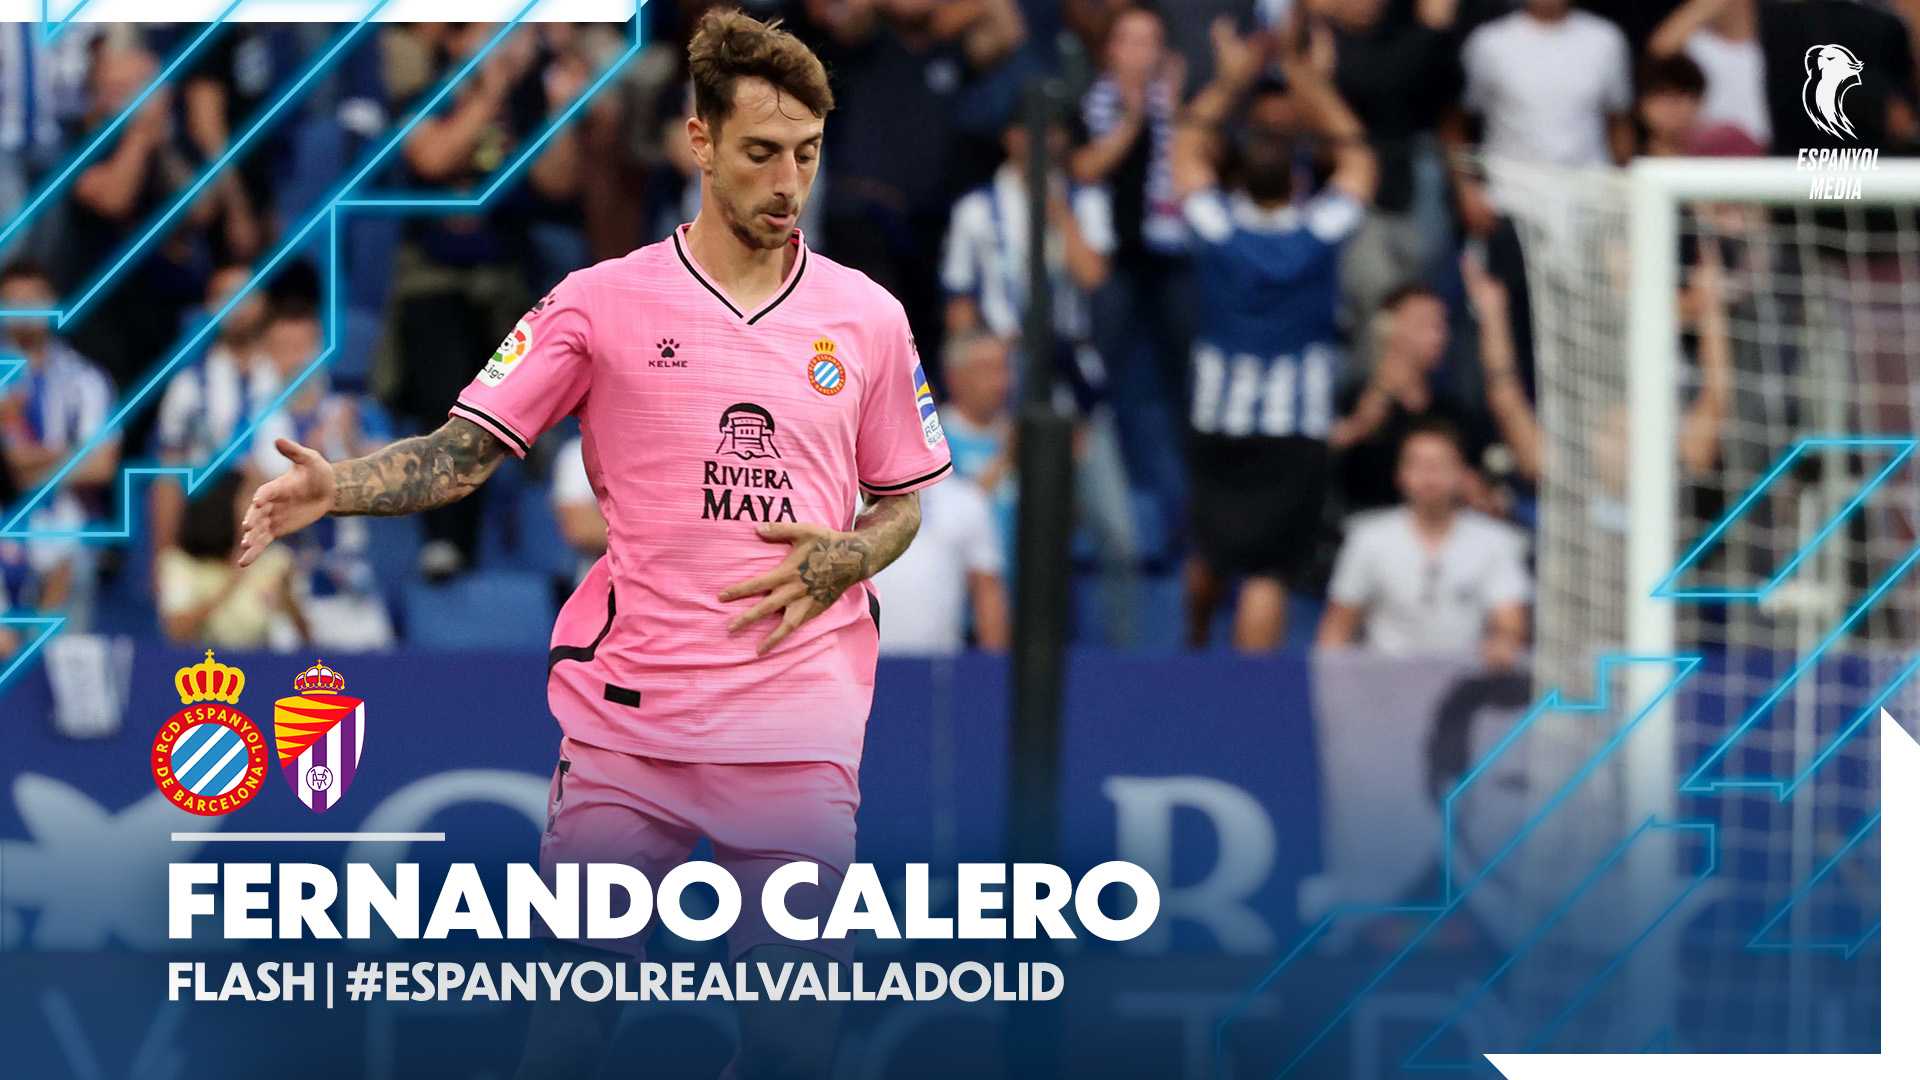 🧱 FLASH | 🐦 Fernando Calero | #EspanyolRealValladolid